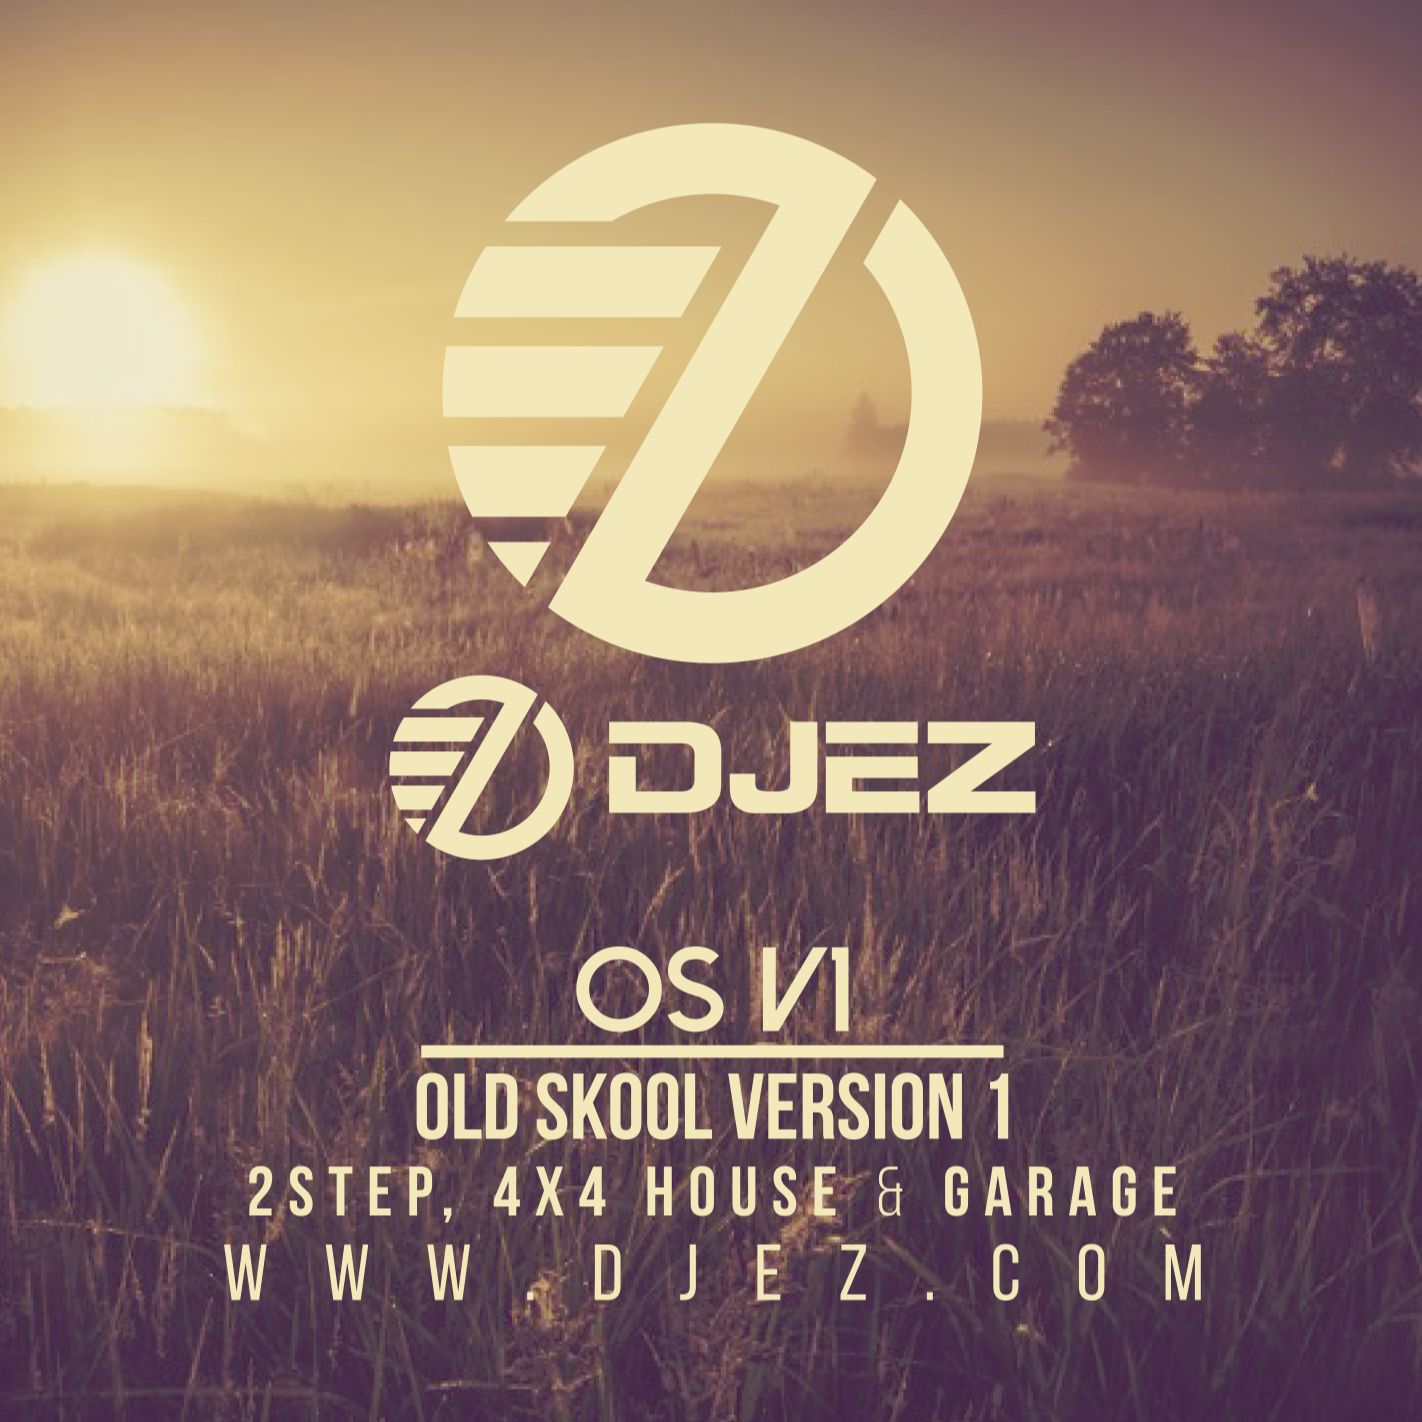 DJ EZ – OS V1 (Old Skool Version One) (Old Skool UK Garage, 2Step, 4x4 House & Garage)